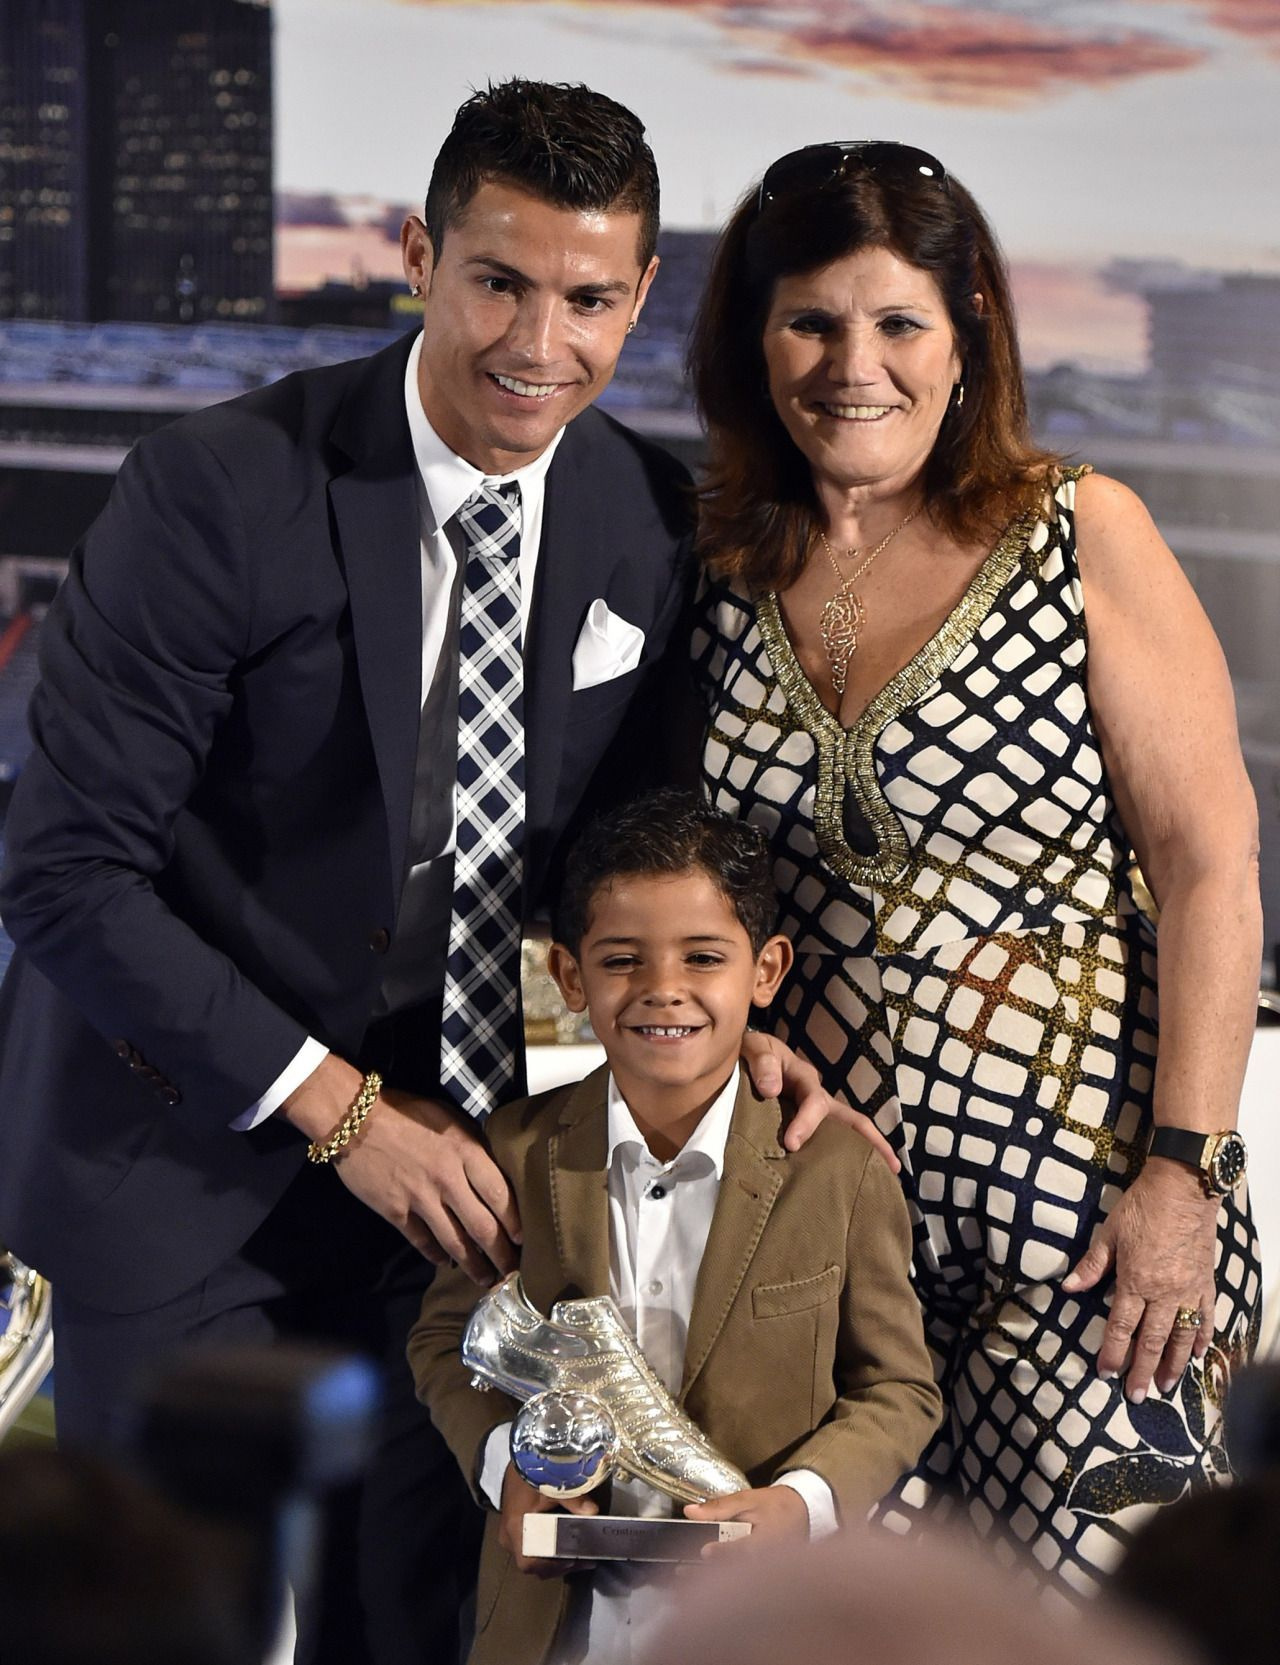 Ronaldo'nun annesi felç geçirdi apar topar hastaneye kaldırıldı